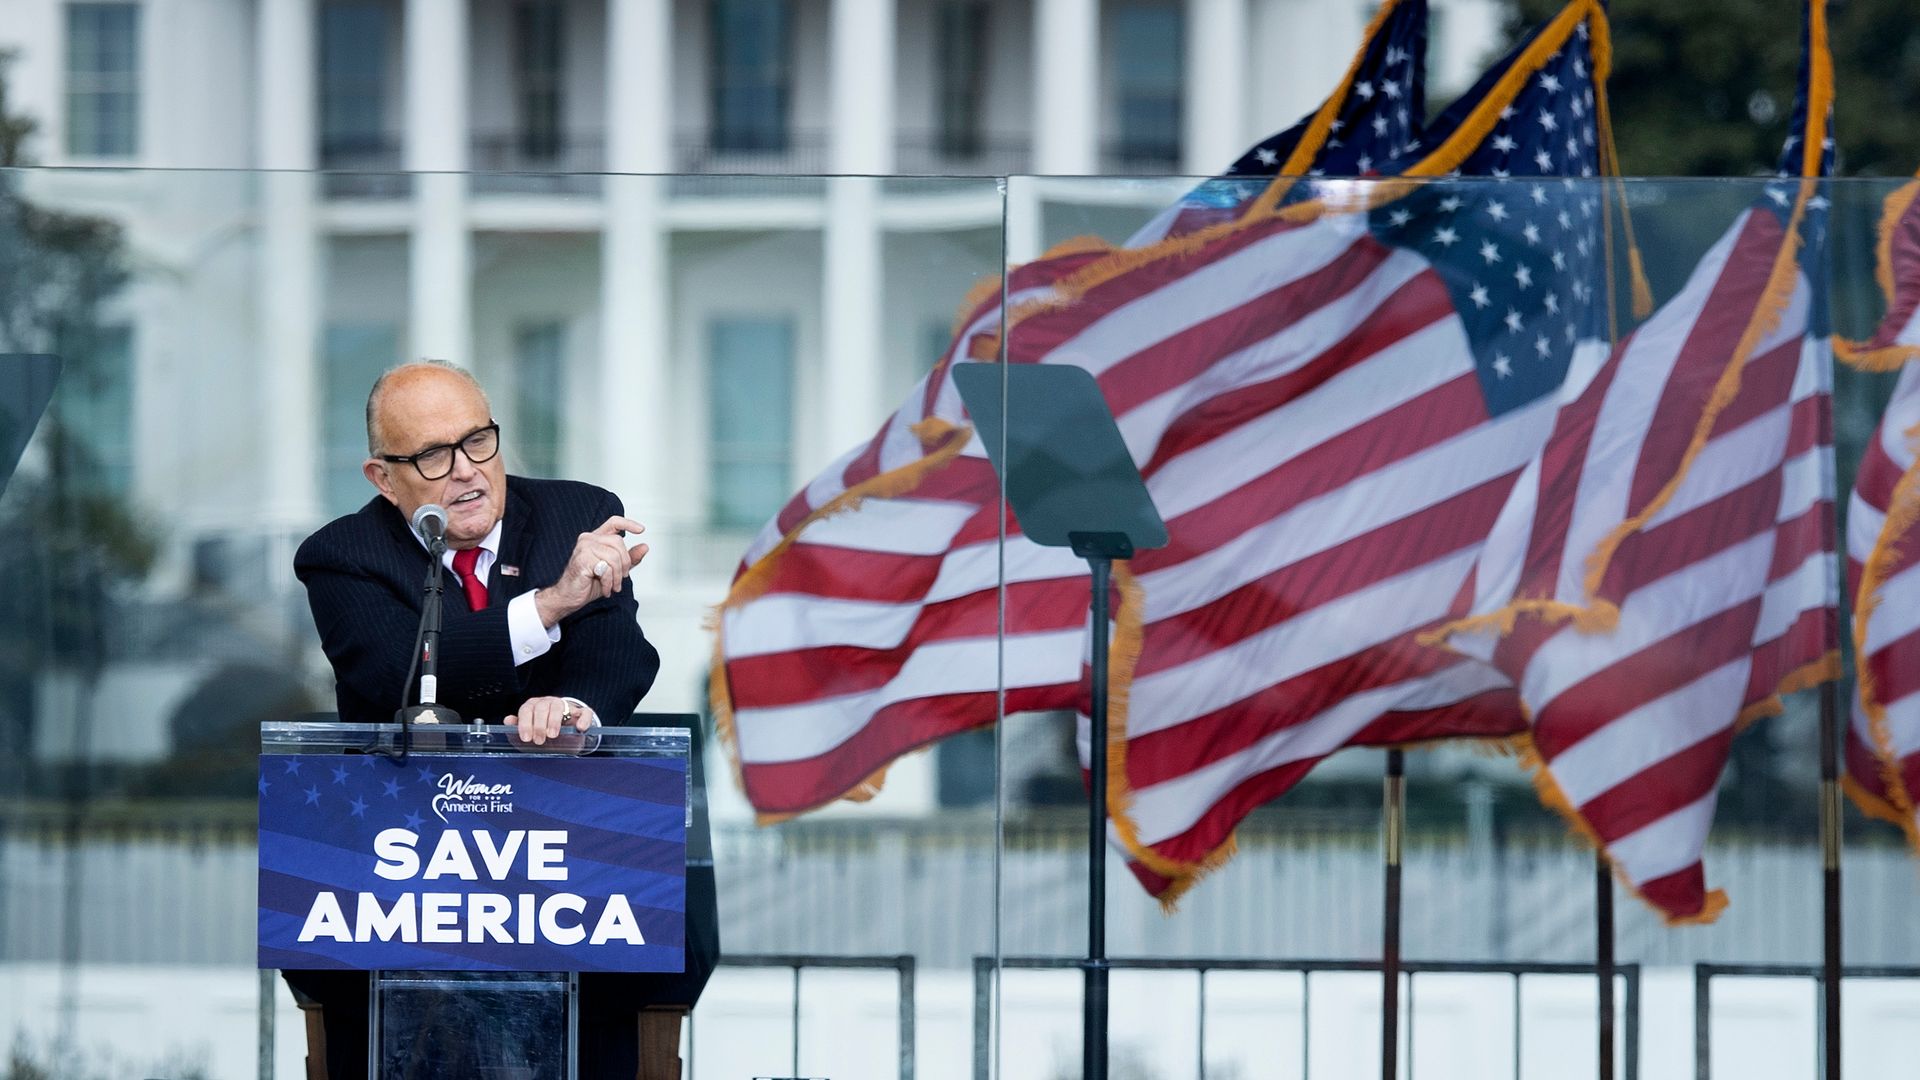 Rudy Giuliani at a podium.